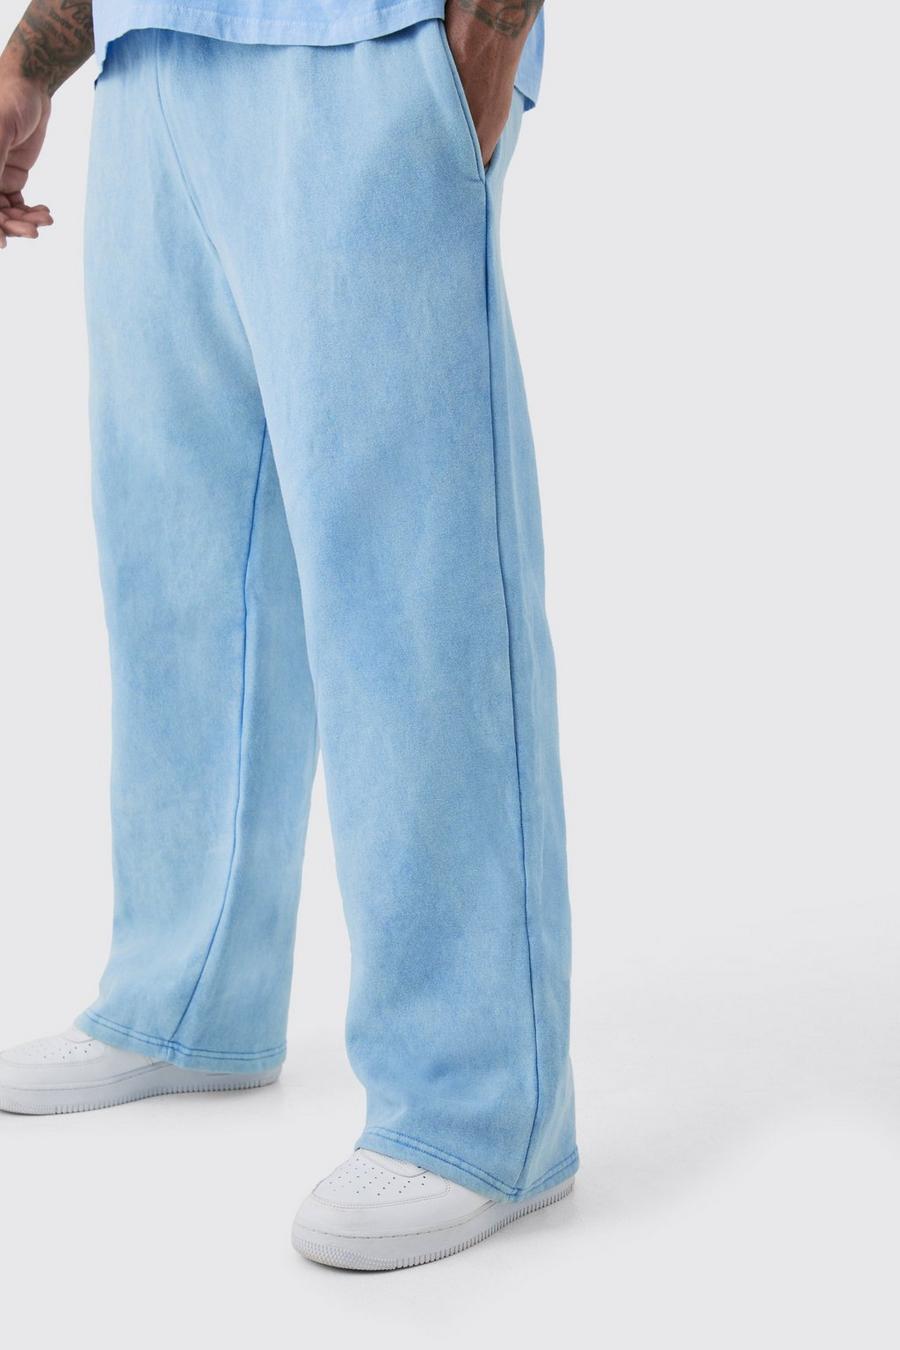 Pantaloni tuta Plus Size rilassati in lavaggio riciclato, Cornflower blue image number 1